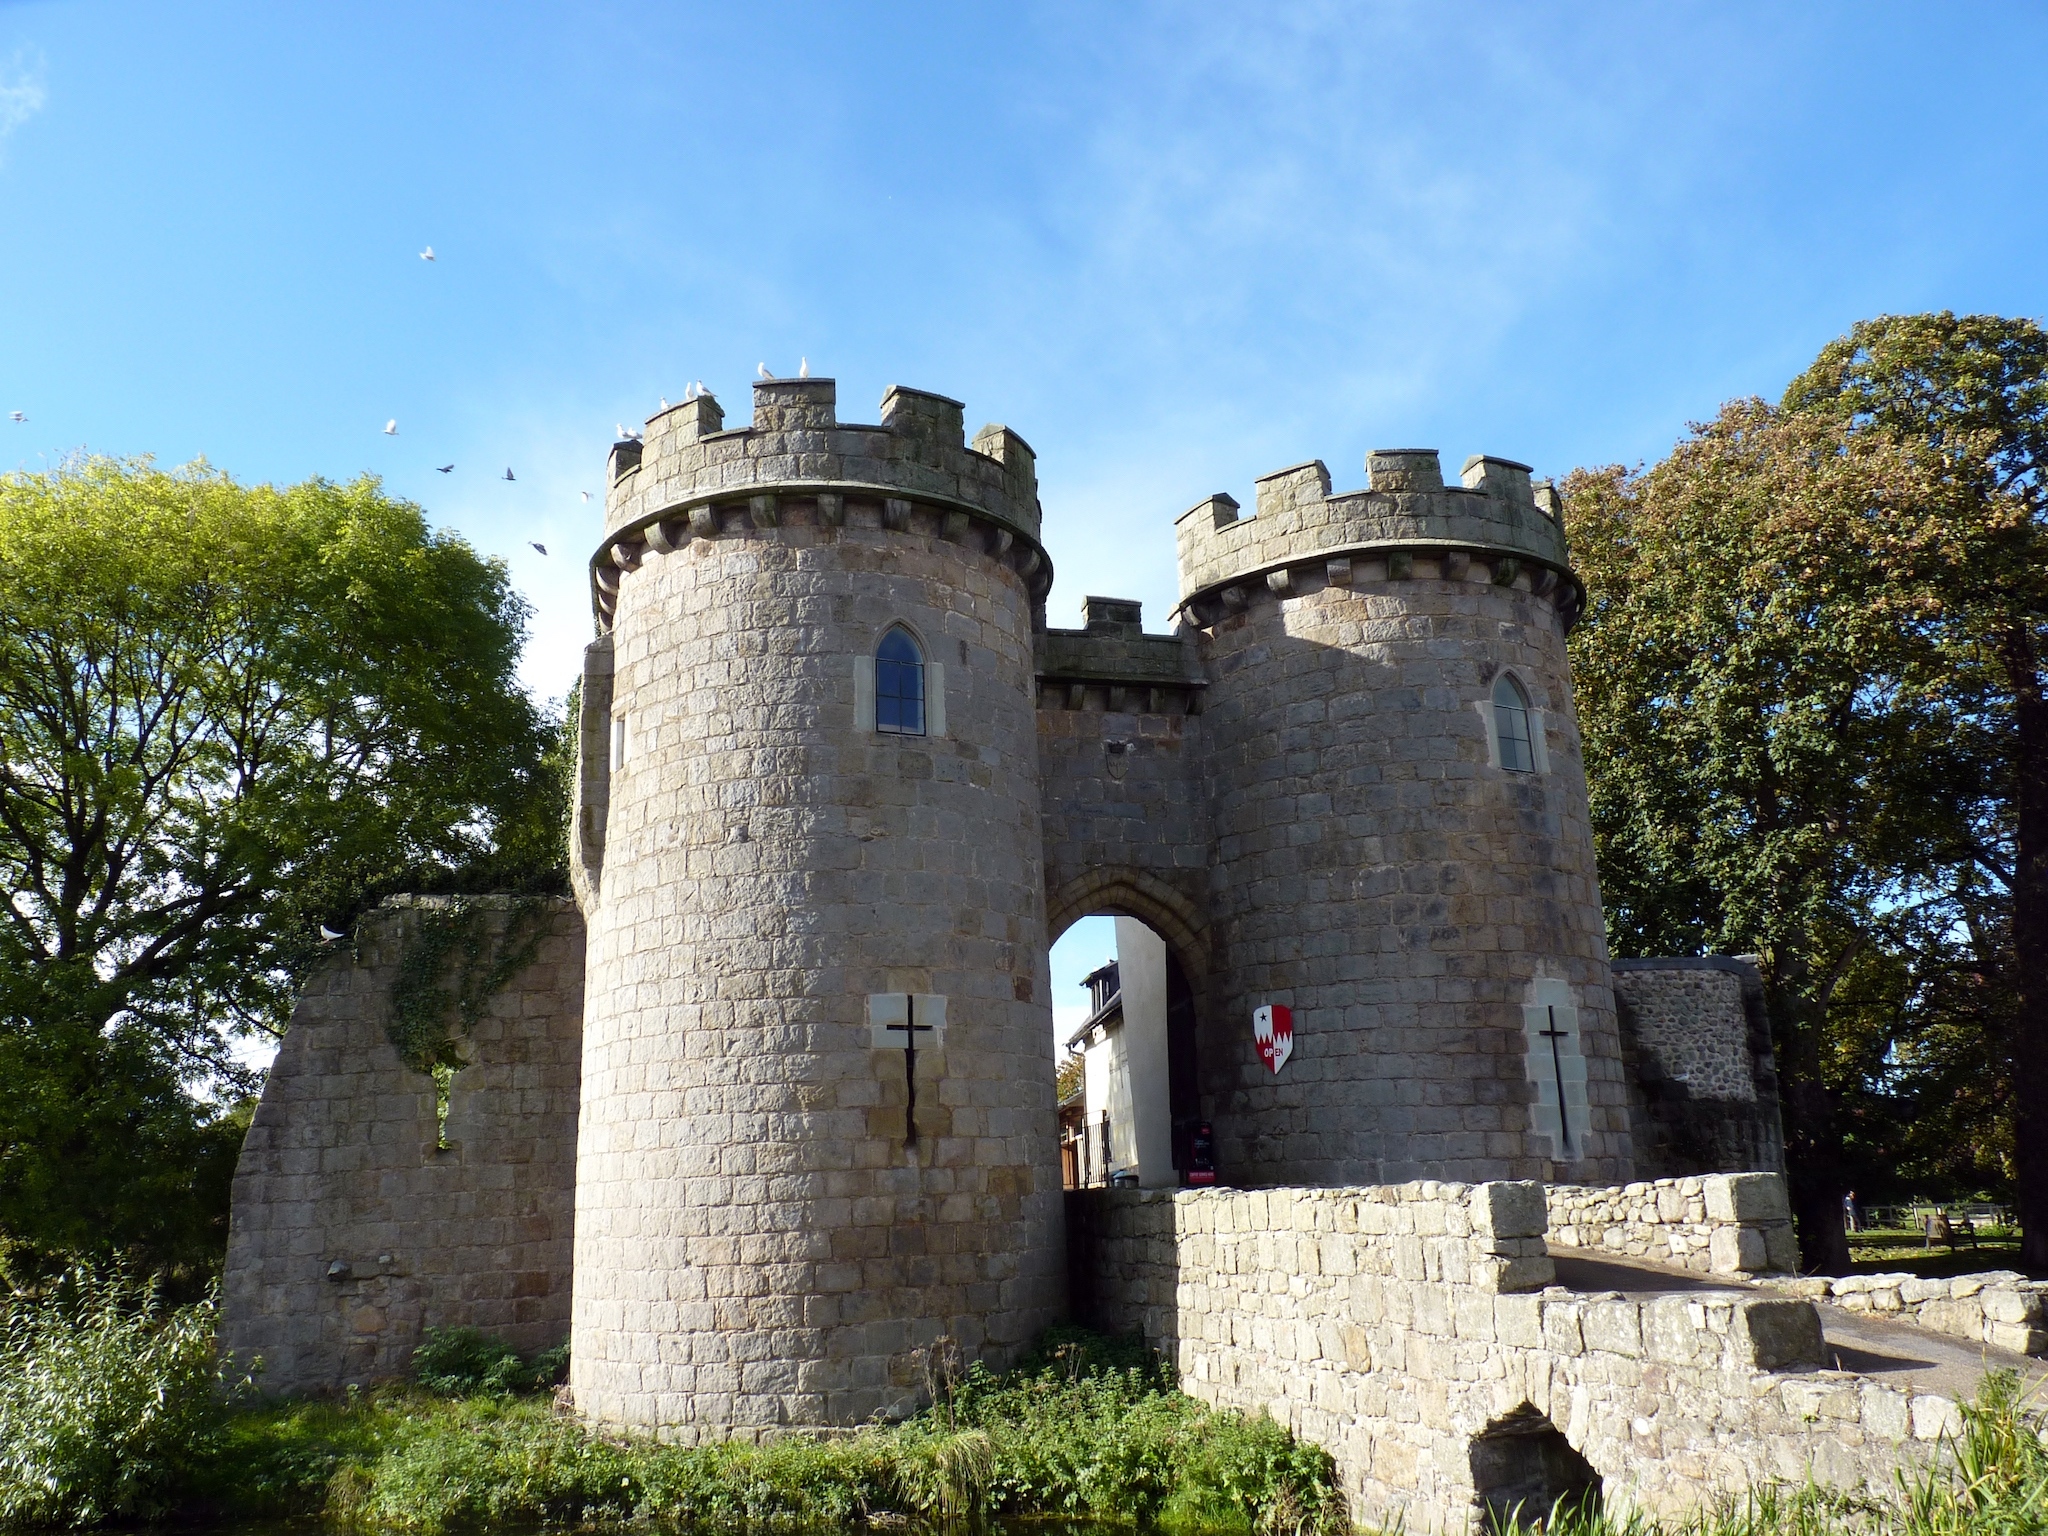 Whittington Castle